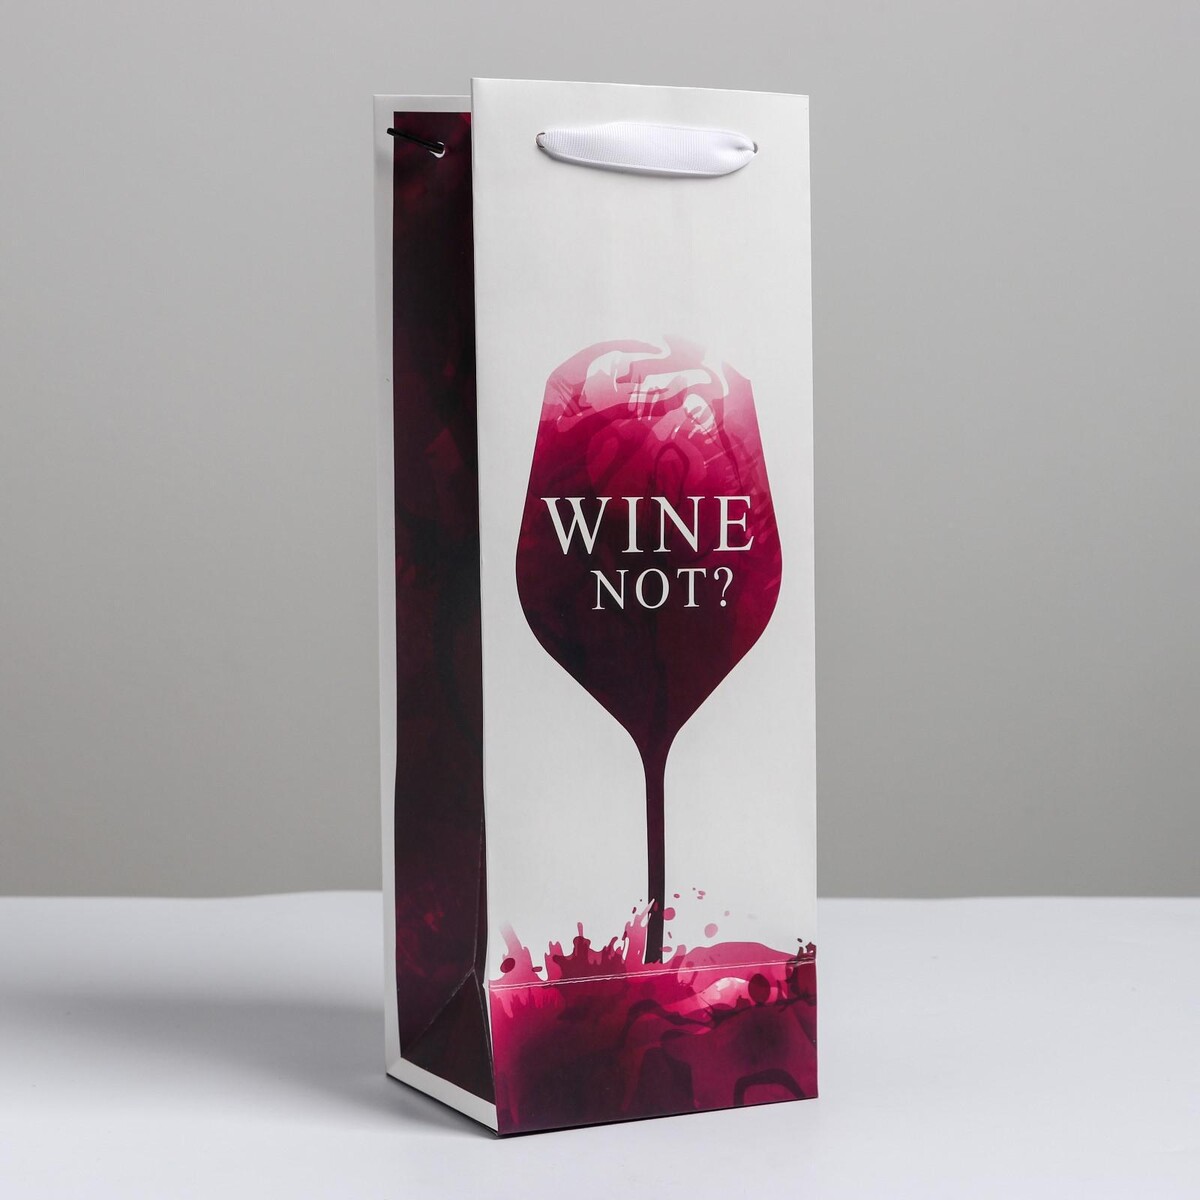 Пакет подарочный ламинированный под бутылку, упаковка, wine not, 13 x 35 x 10 см